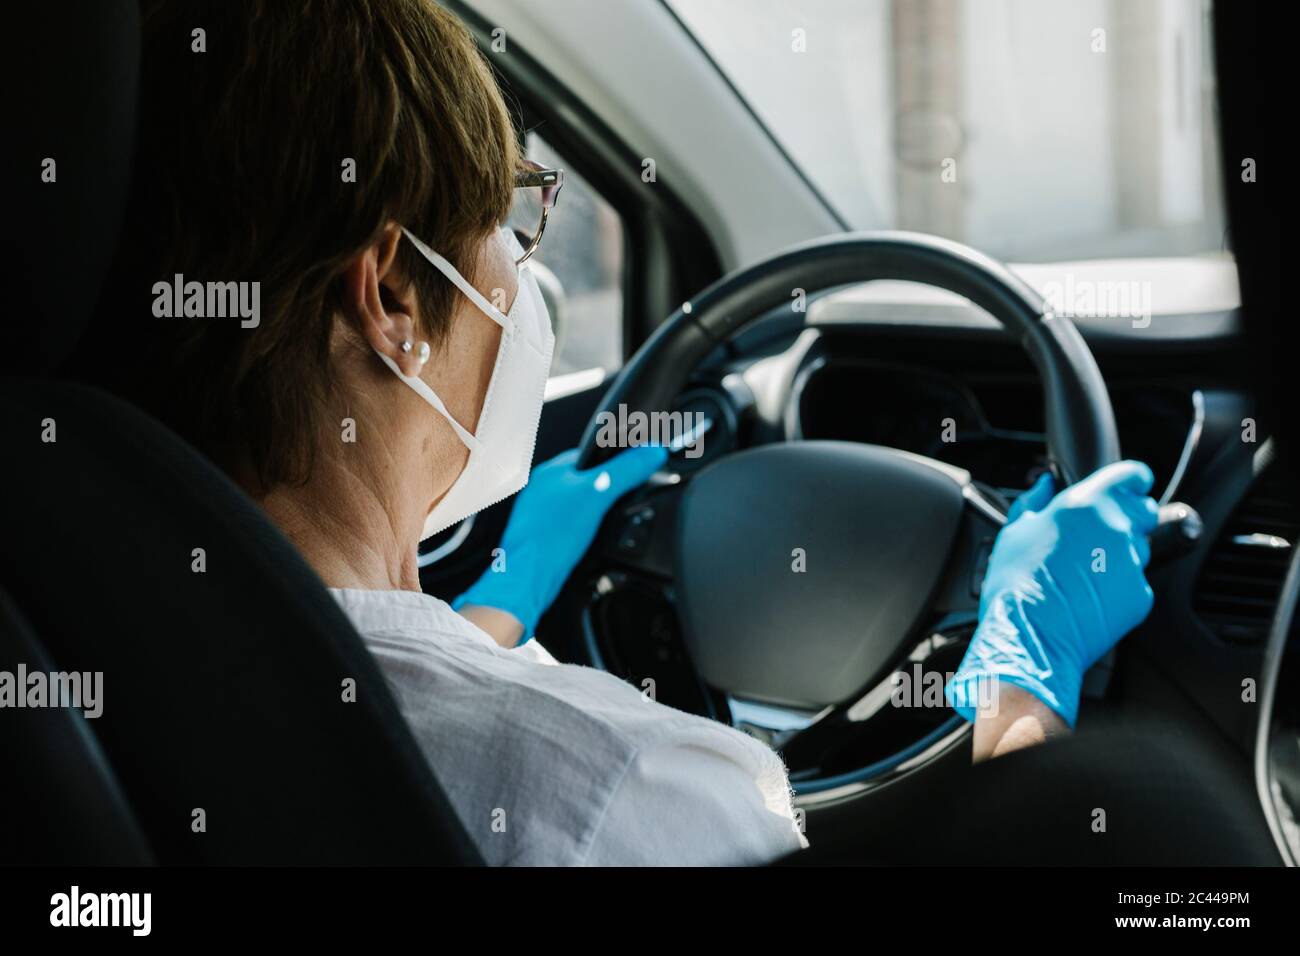 Frau trägt Maske und Handschuhe Auto fahren Stockfotografie - Alamy